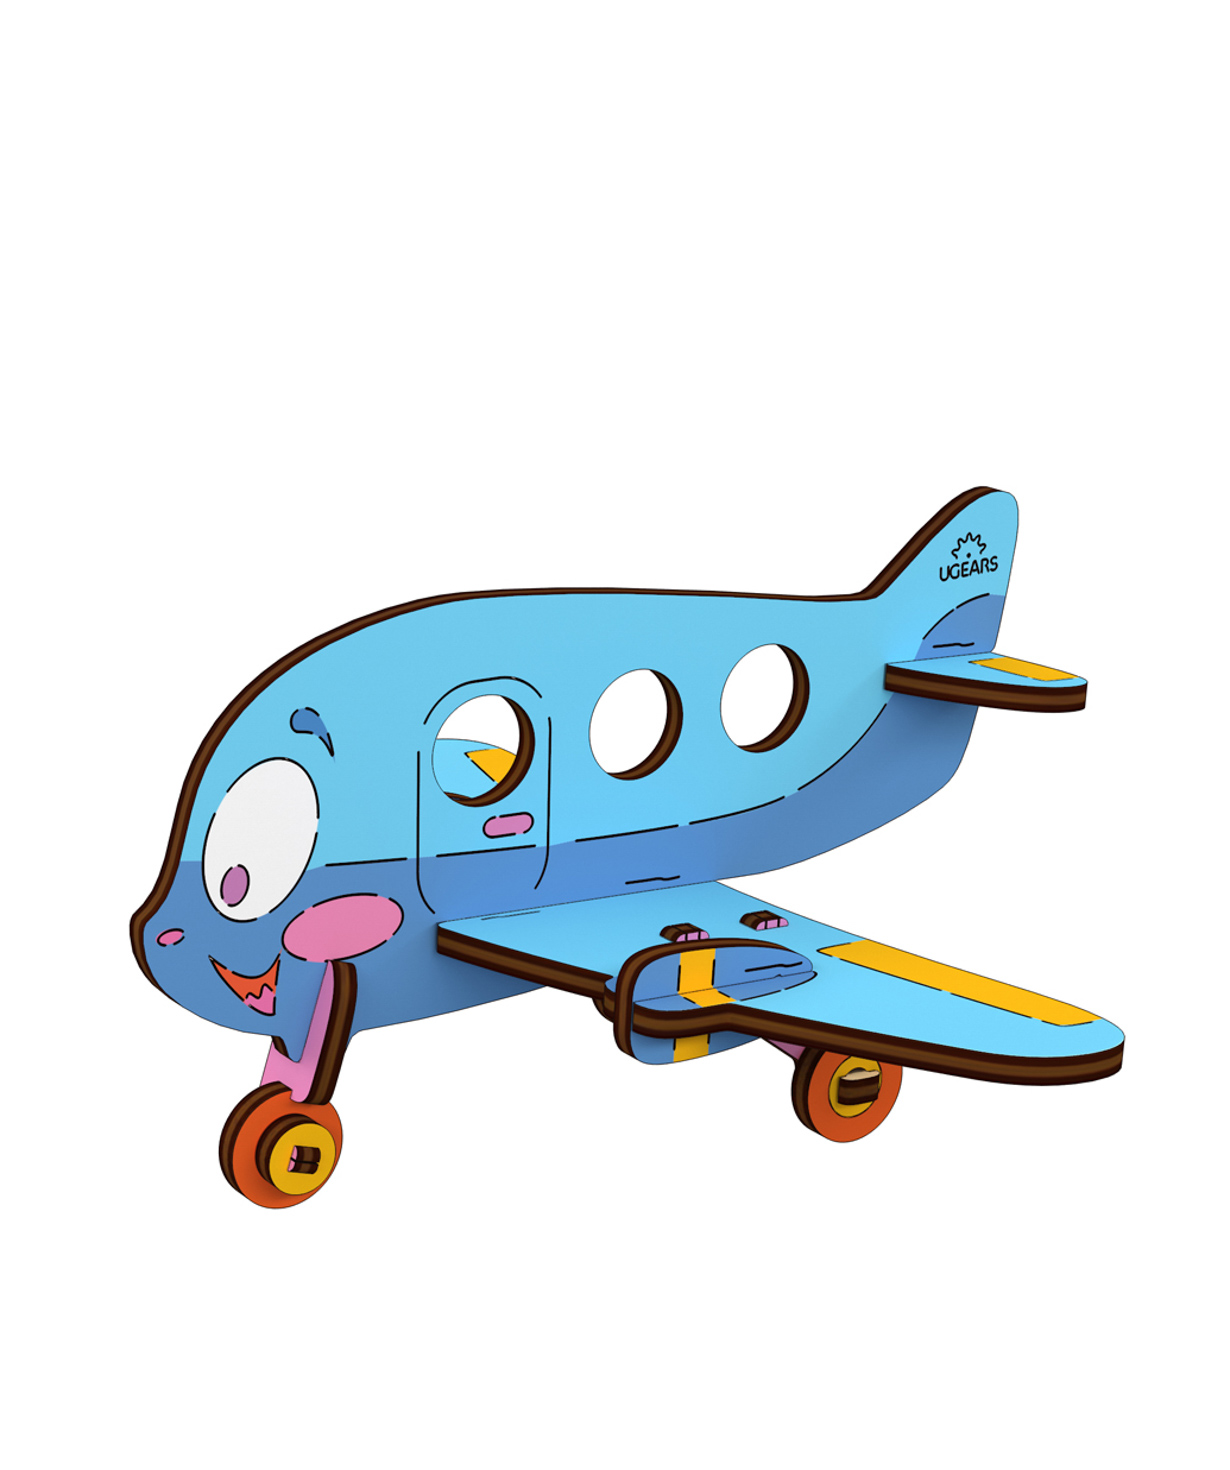 Խաղալիք «Ինքնաթիռ»  3D մոդել